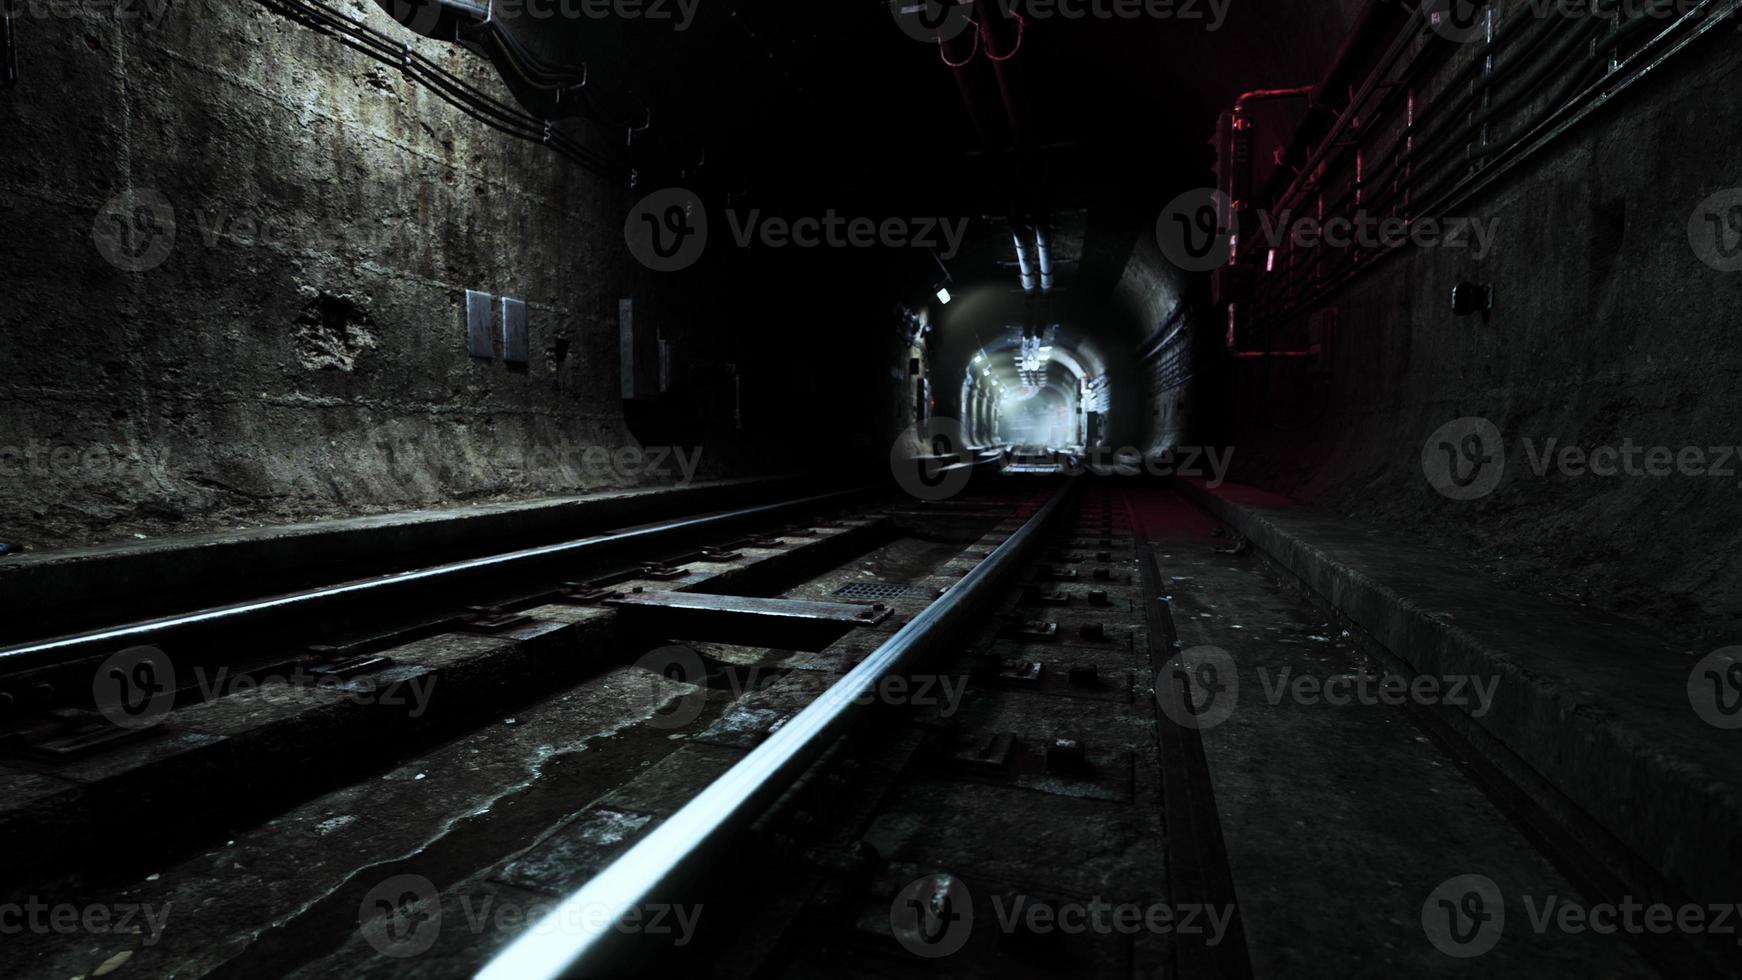 tunnel ferroviaire vide près de la gare souterraine photo